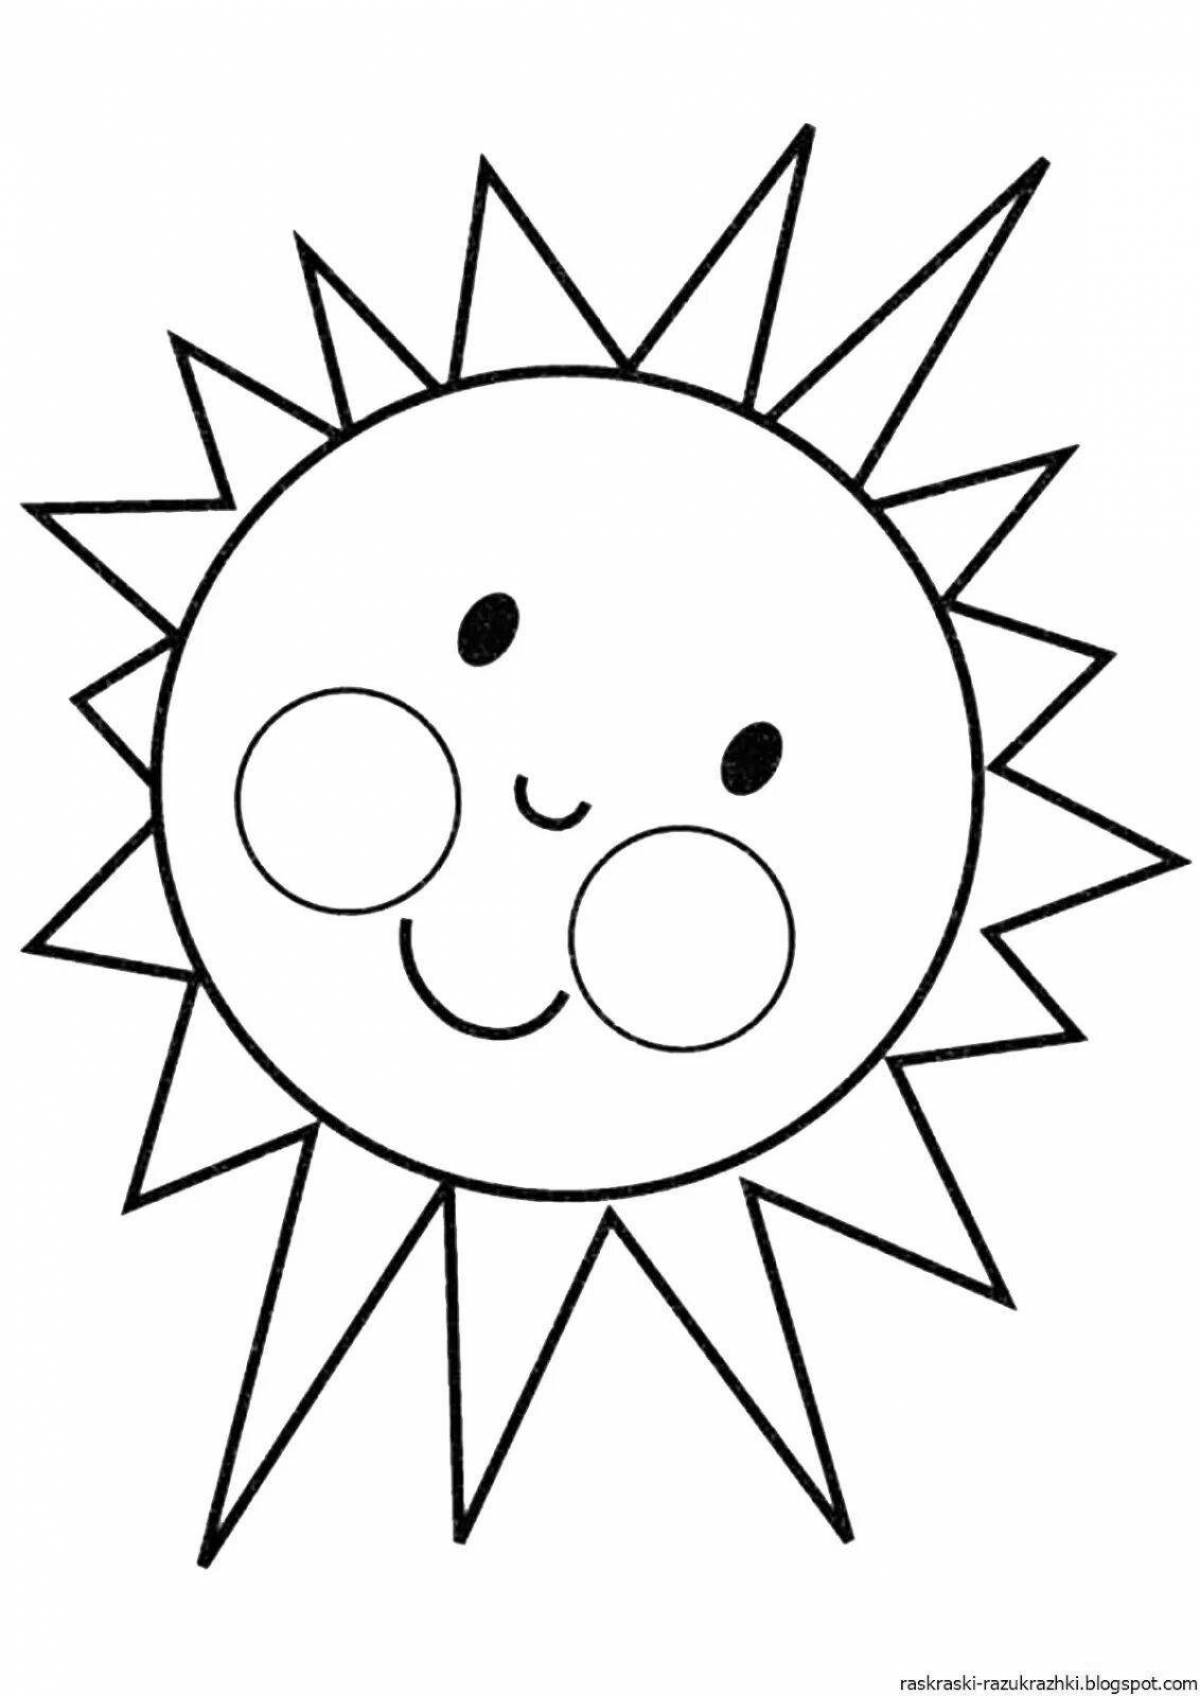 Увлекательная раскраска солнечная картинка для детей